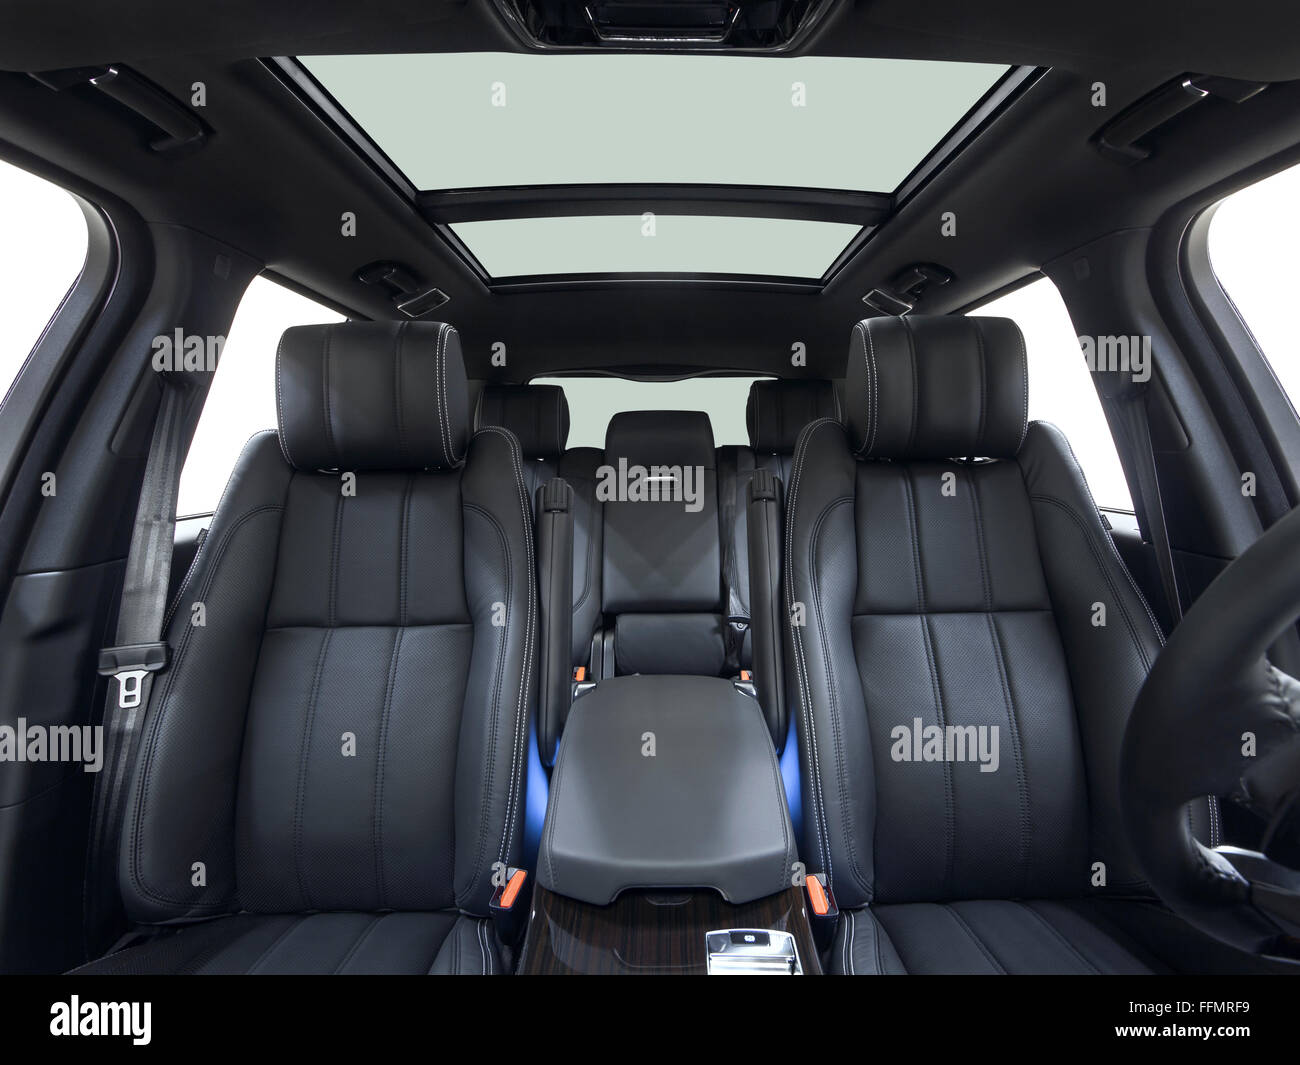 Luxus auto Innenraum mit Sonnenuntergang Beleuchtung und Reflexionen, warme  Farben Stockfotografie - Alamy